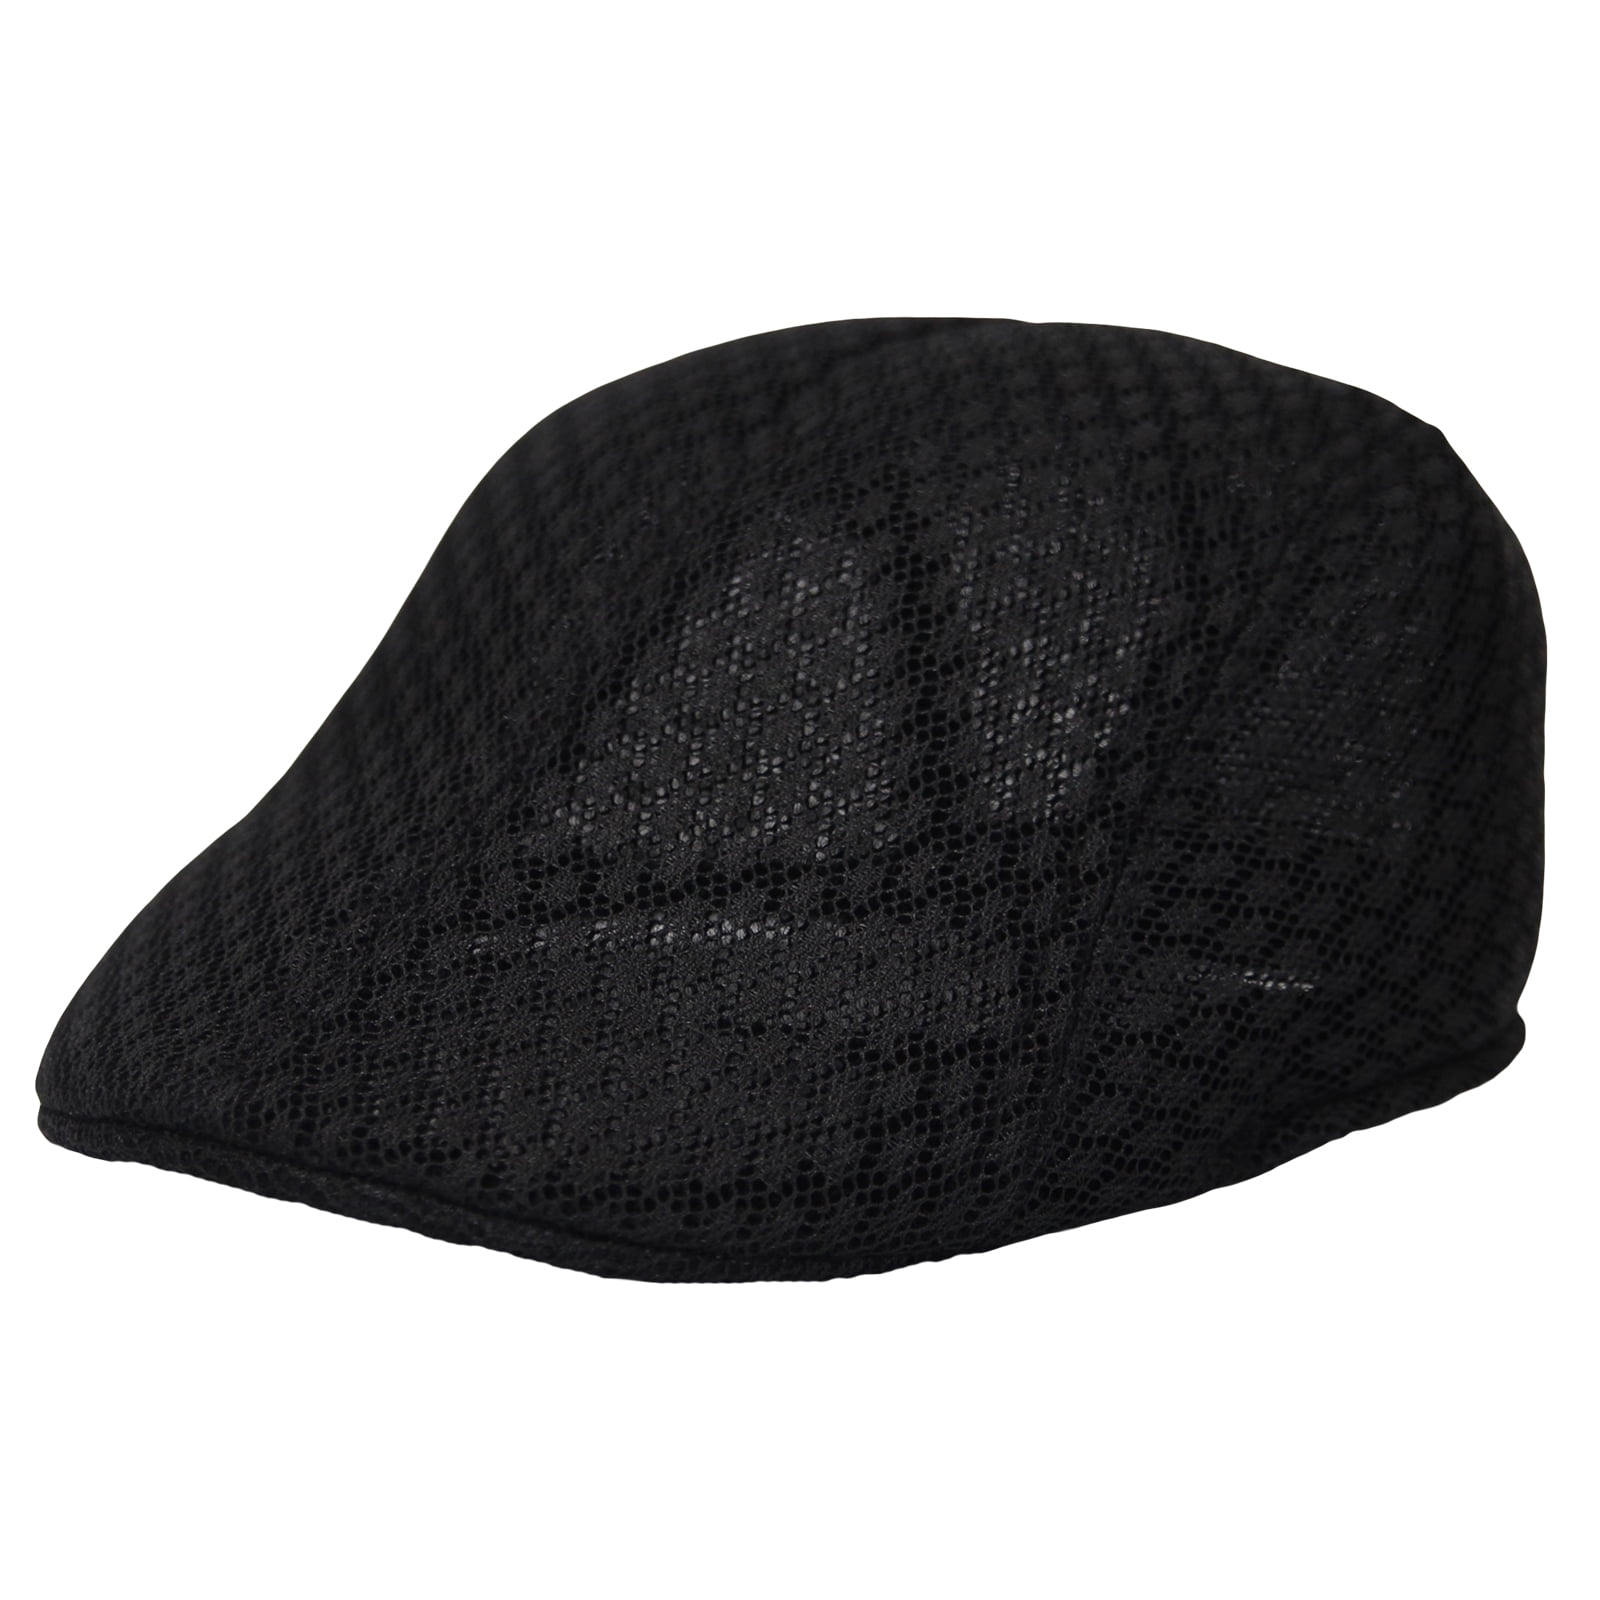 WITHMOONS Breathable Mesh Summer Hat Newsboy Ivy Cap Cabbie Flat Cap UZ30053